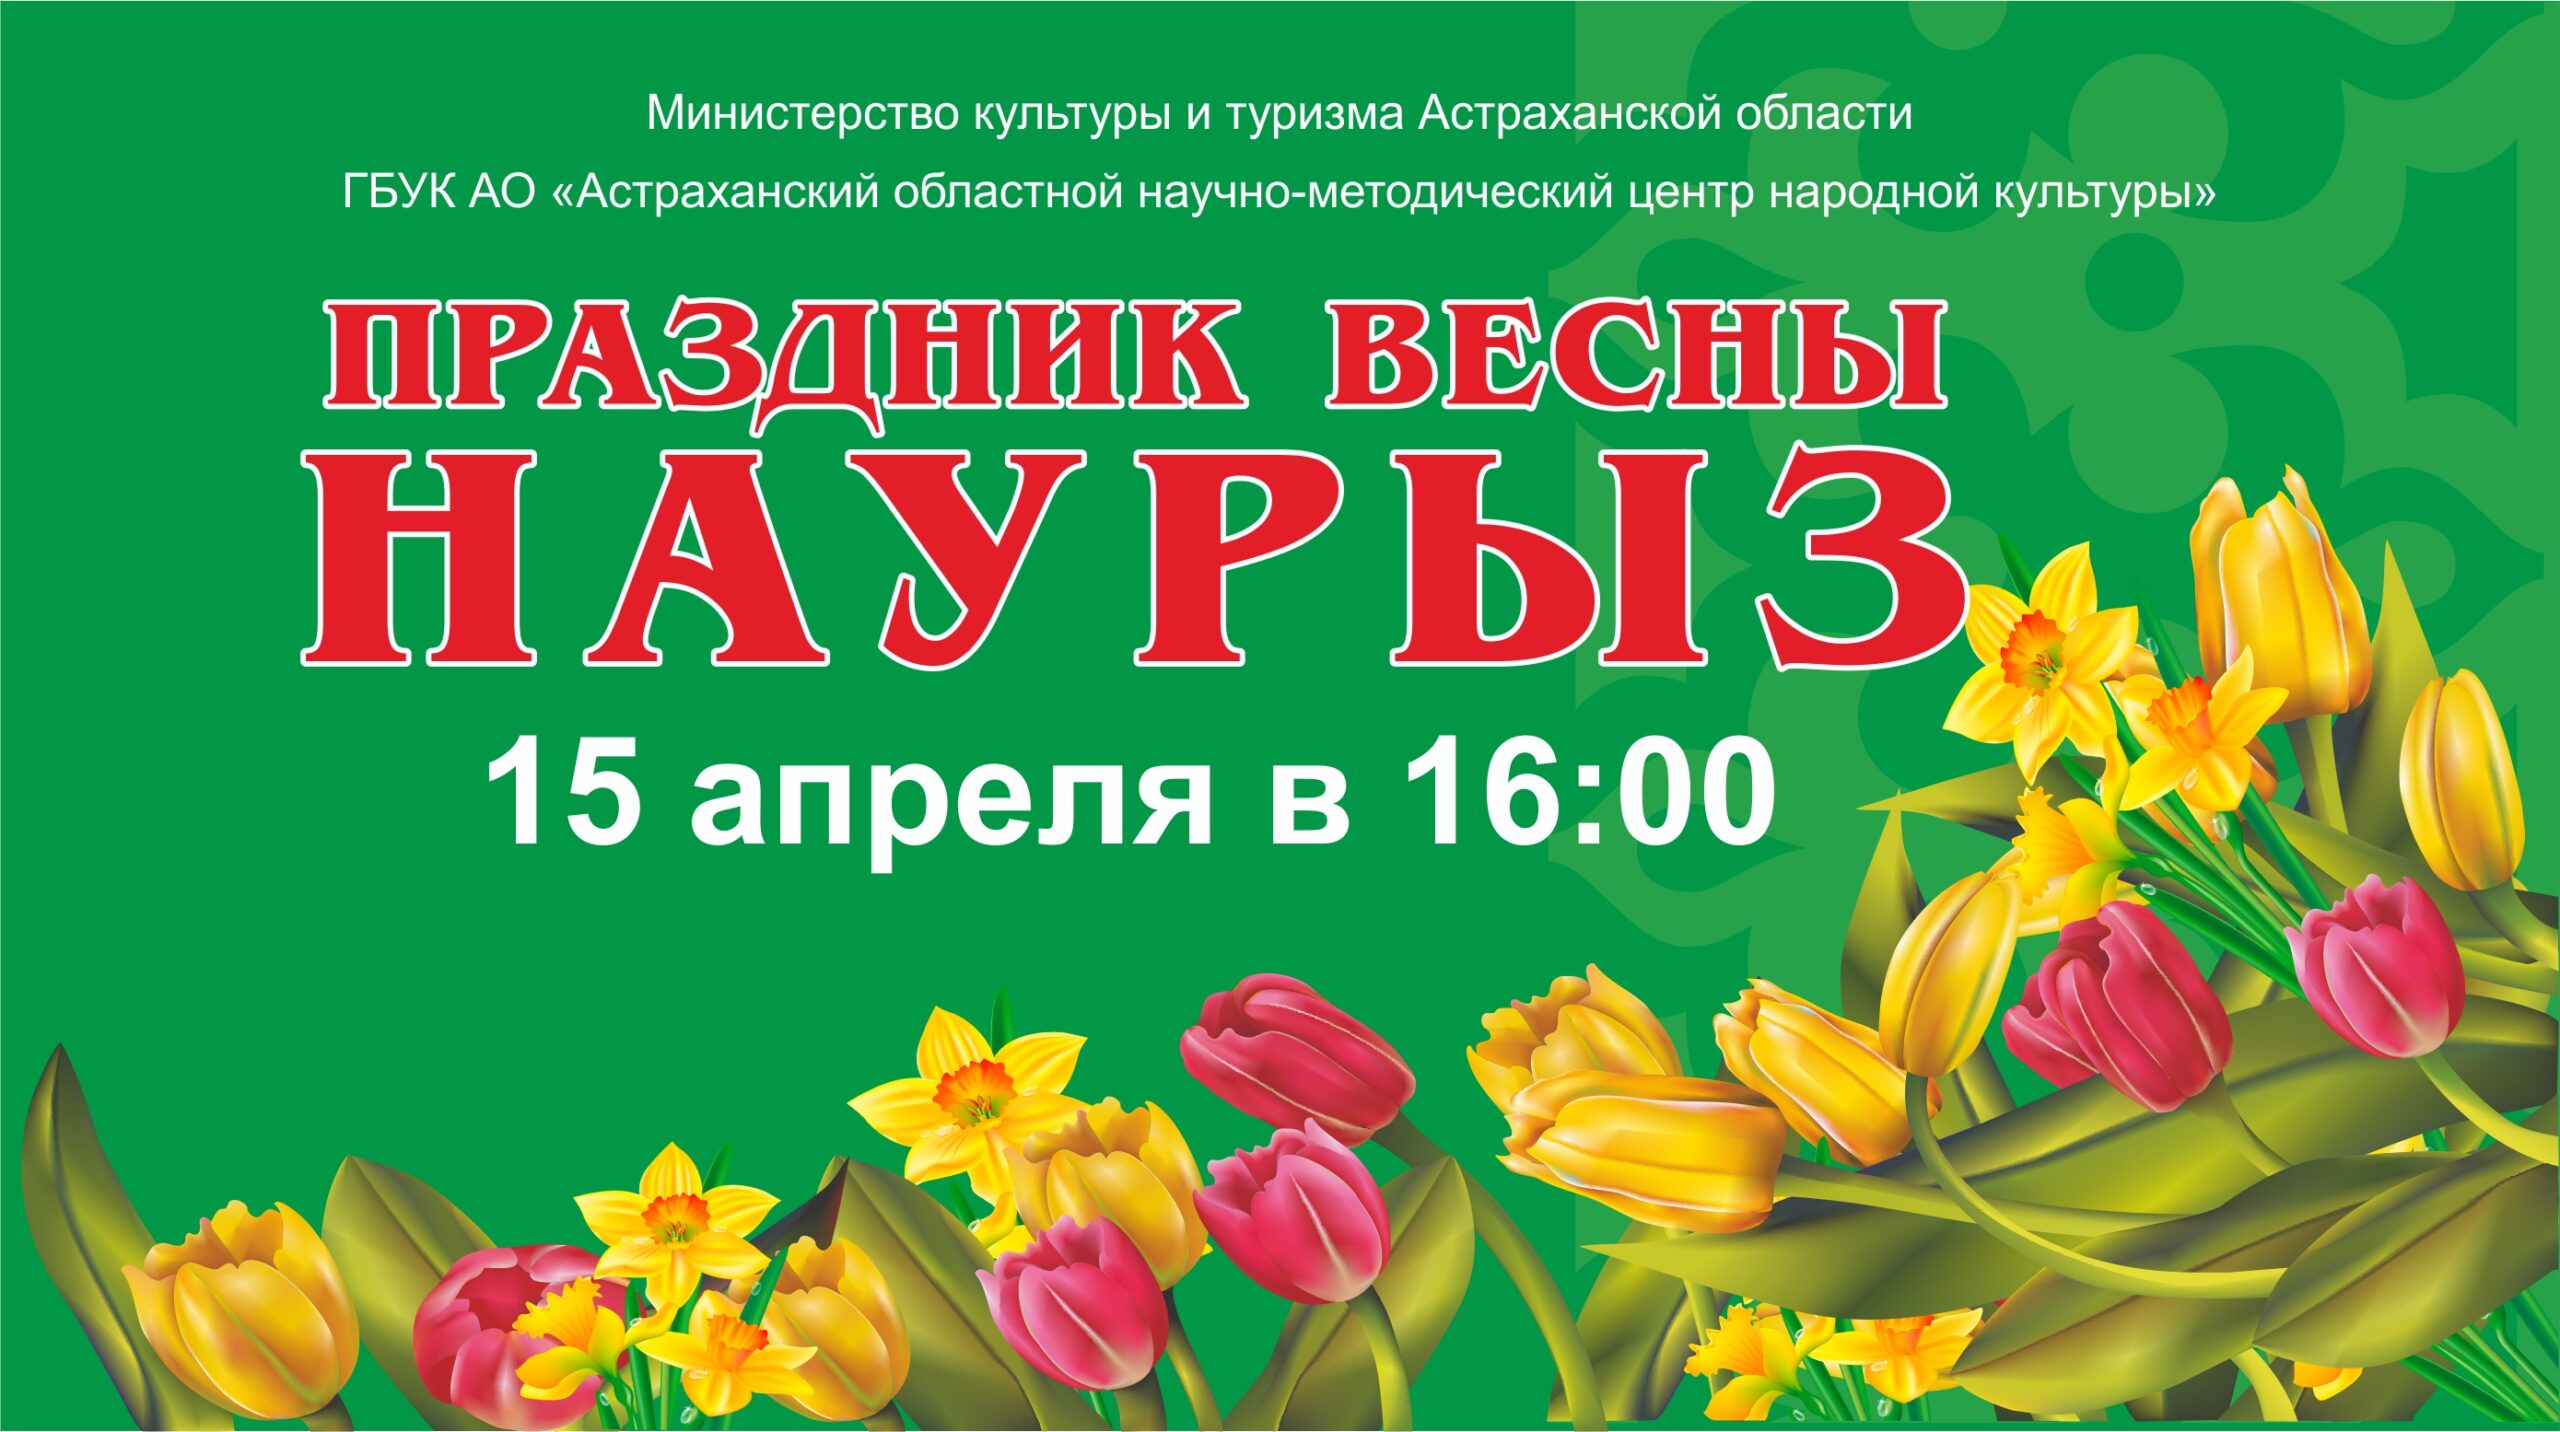 В Доме дружбы состоится праздник весны «Наурыз»